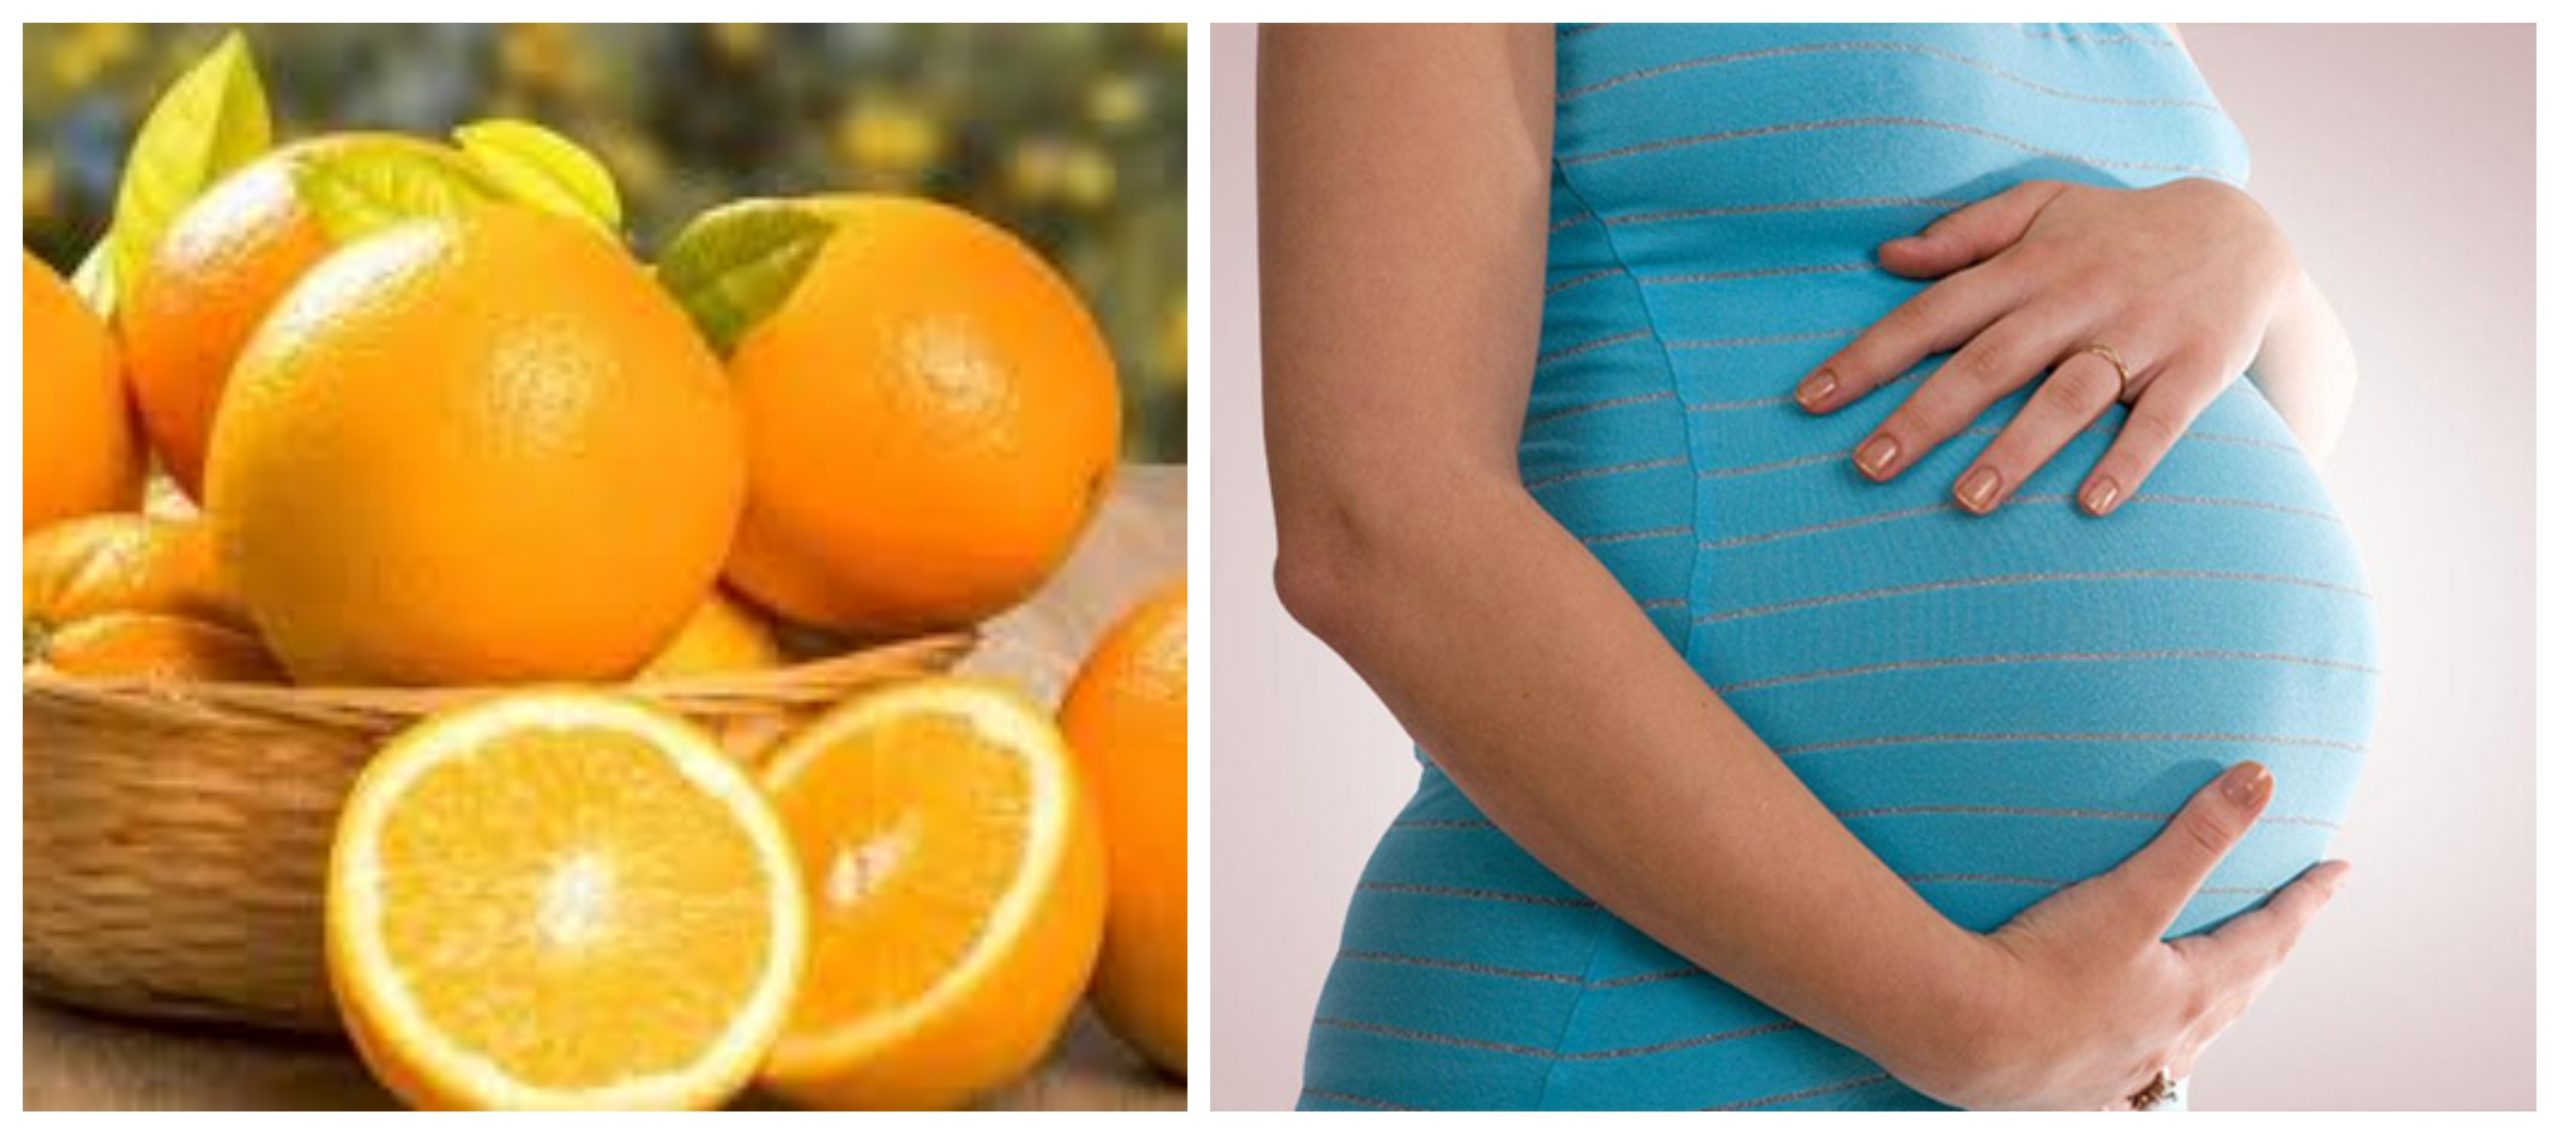 البرتقال مفيد للحوامل